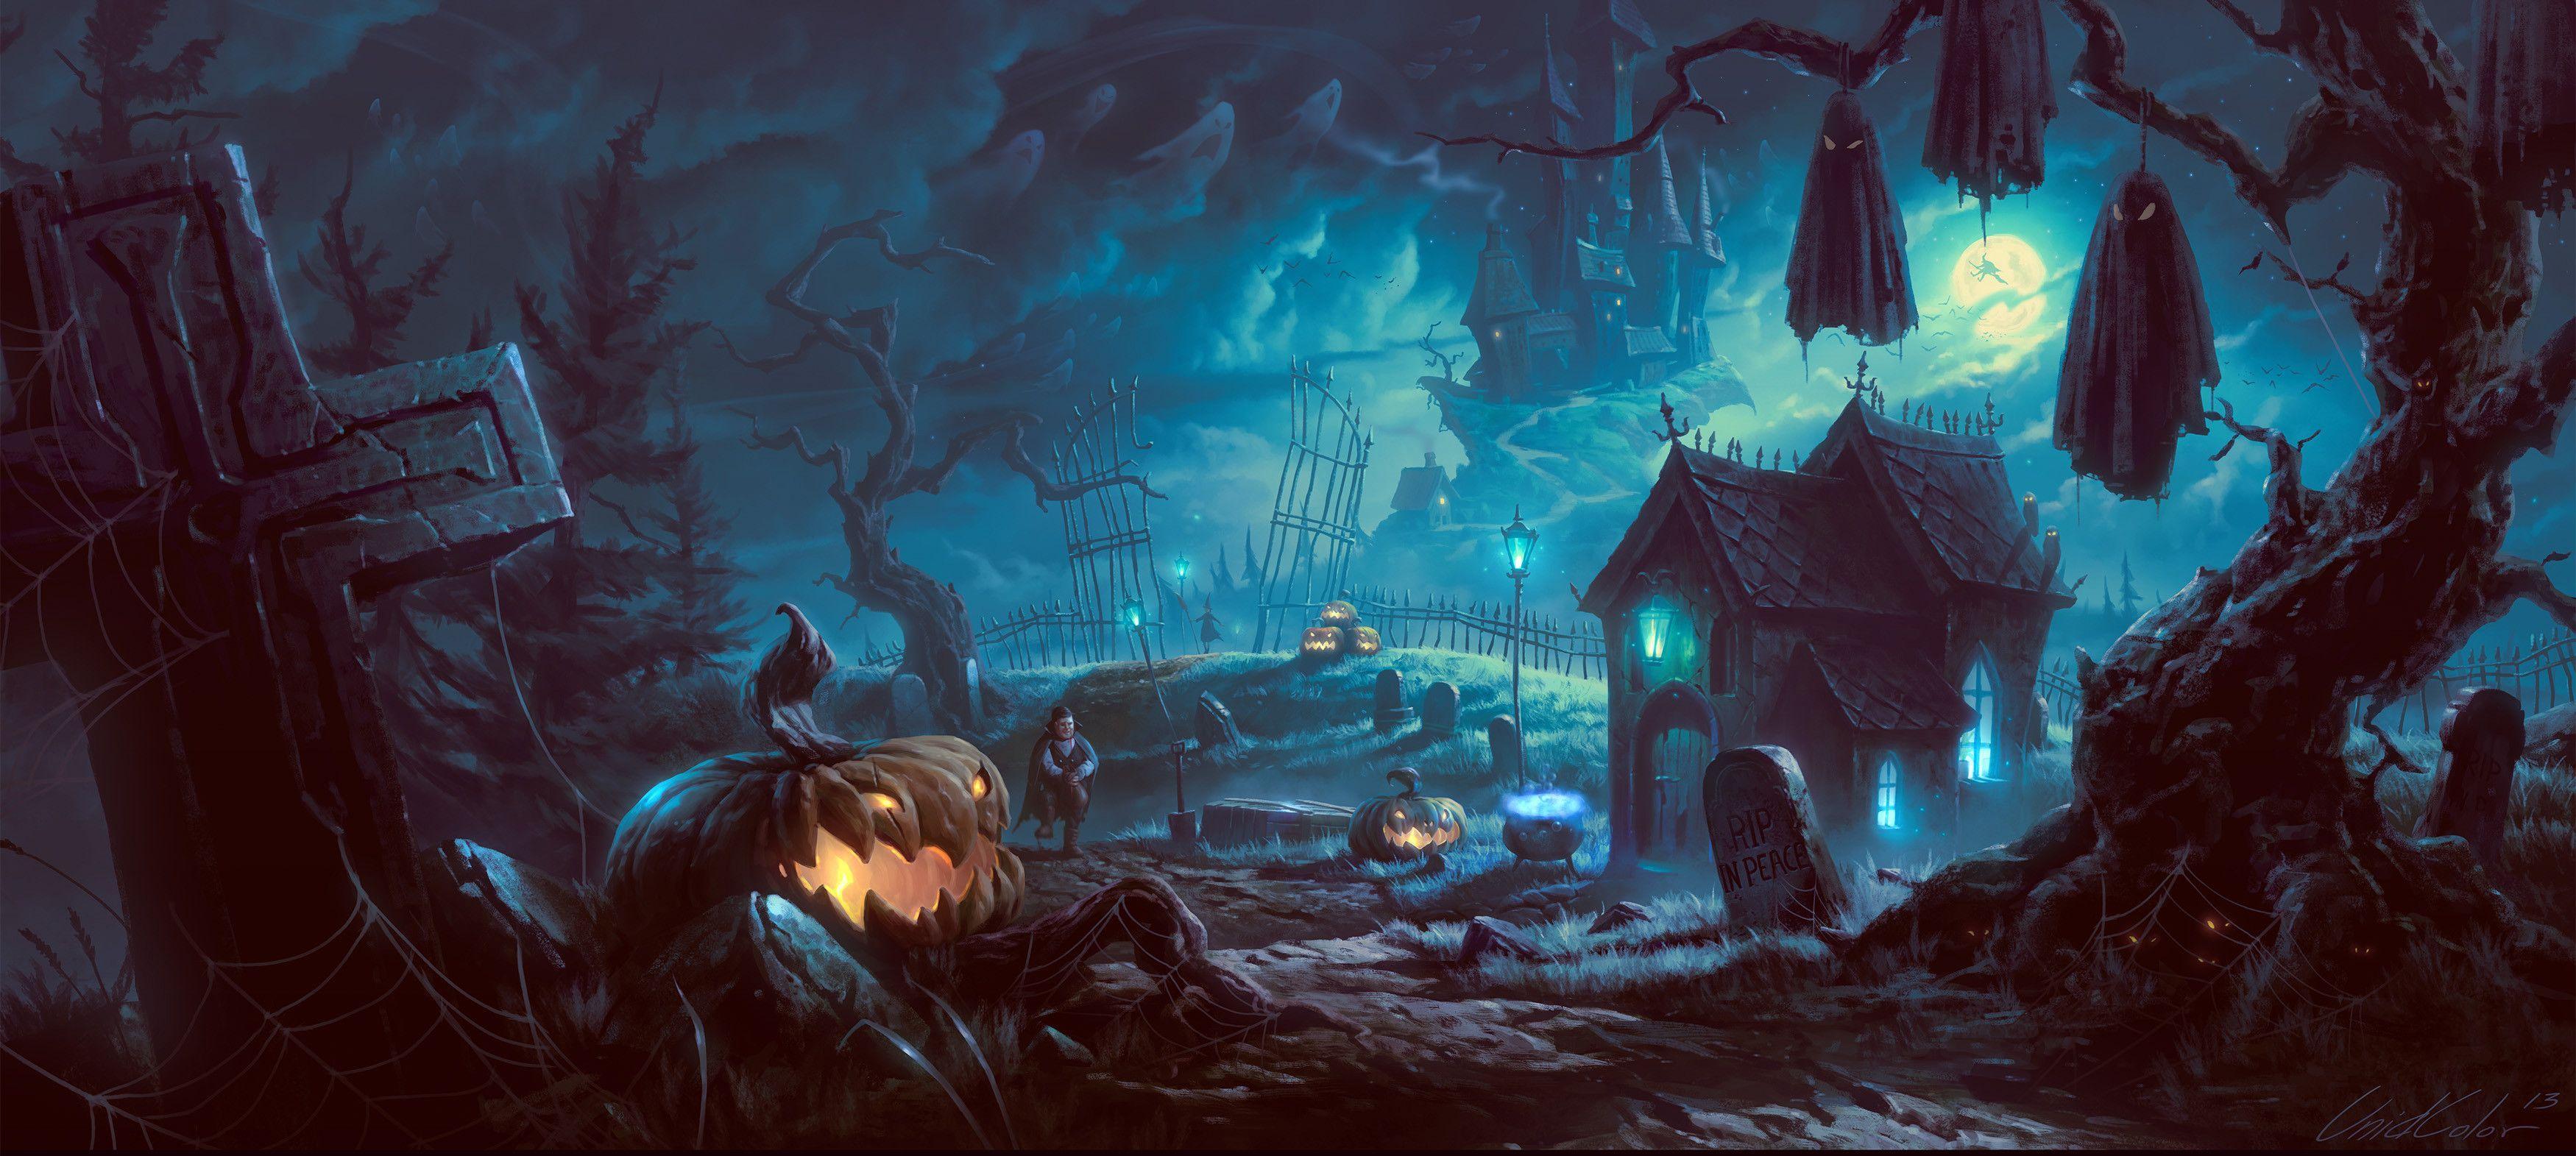 Scary Halloween Desktop Wallpapers - Top Free Scary Halloween Desktop ...